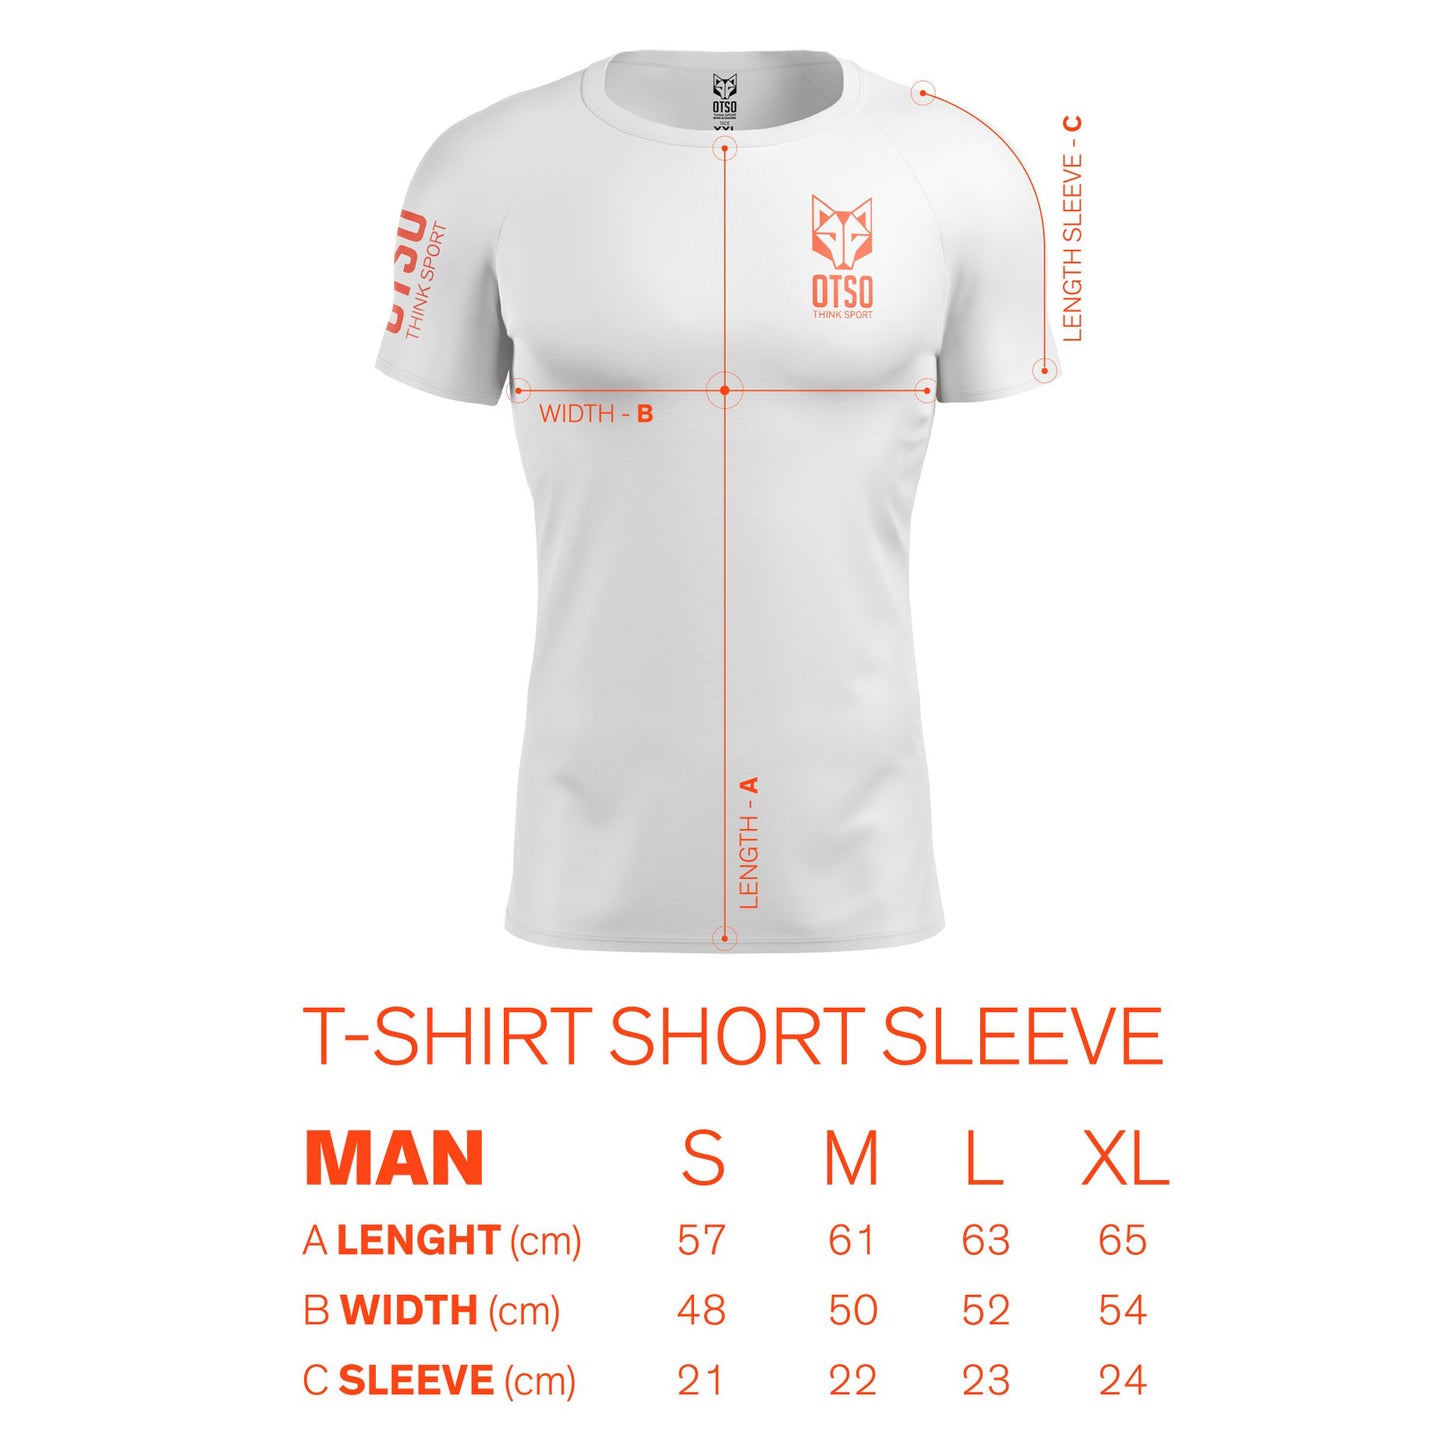 Men's short sleeve t-shirt - Zebra